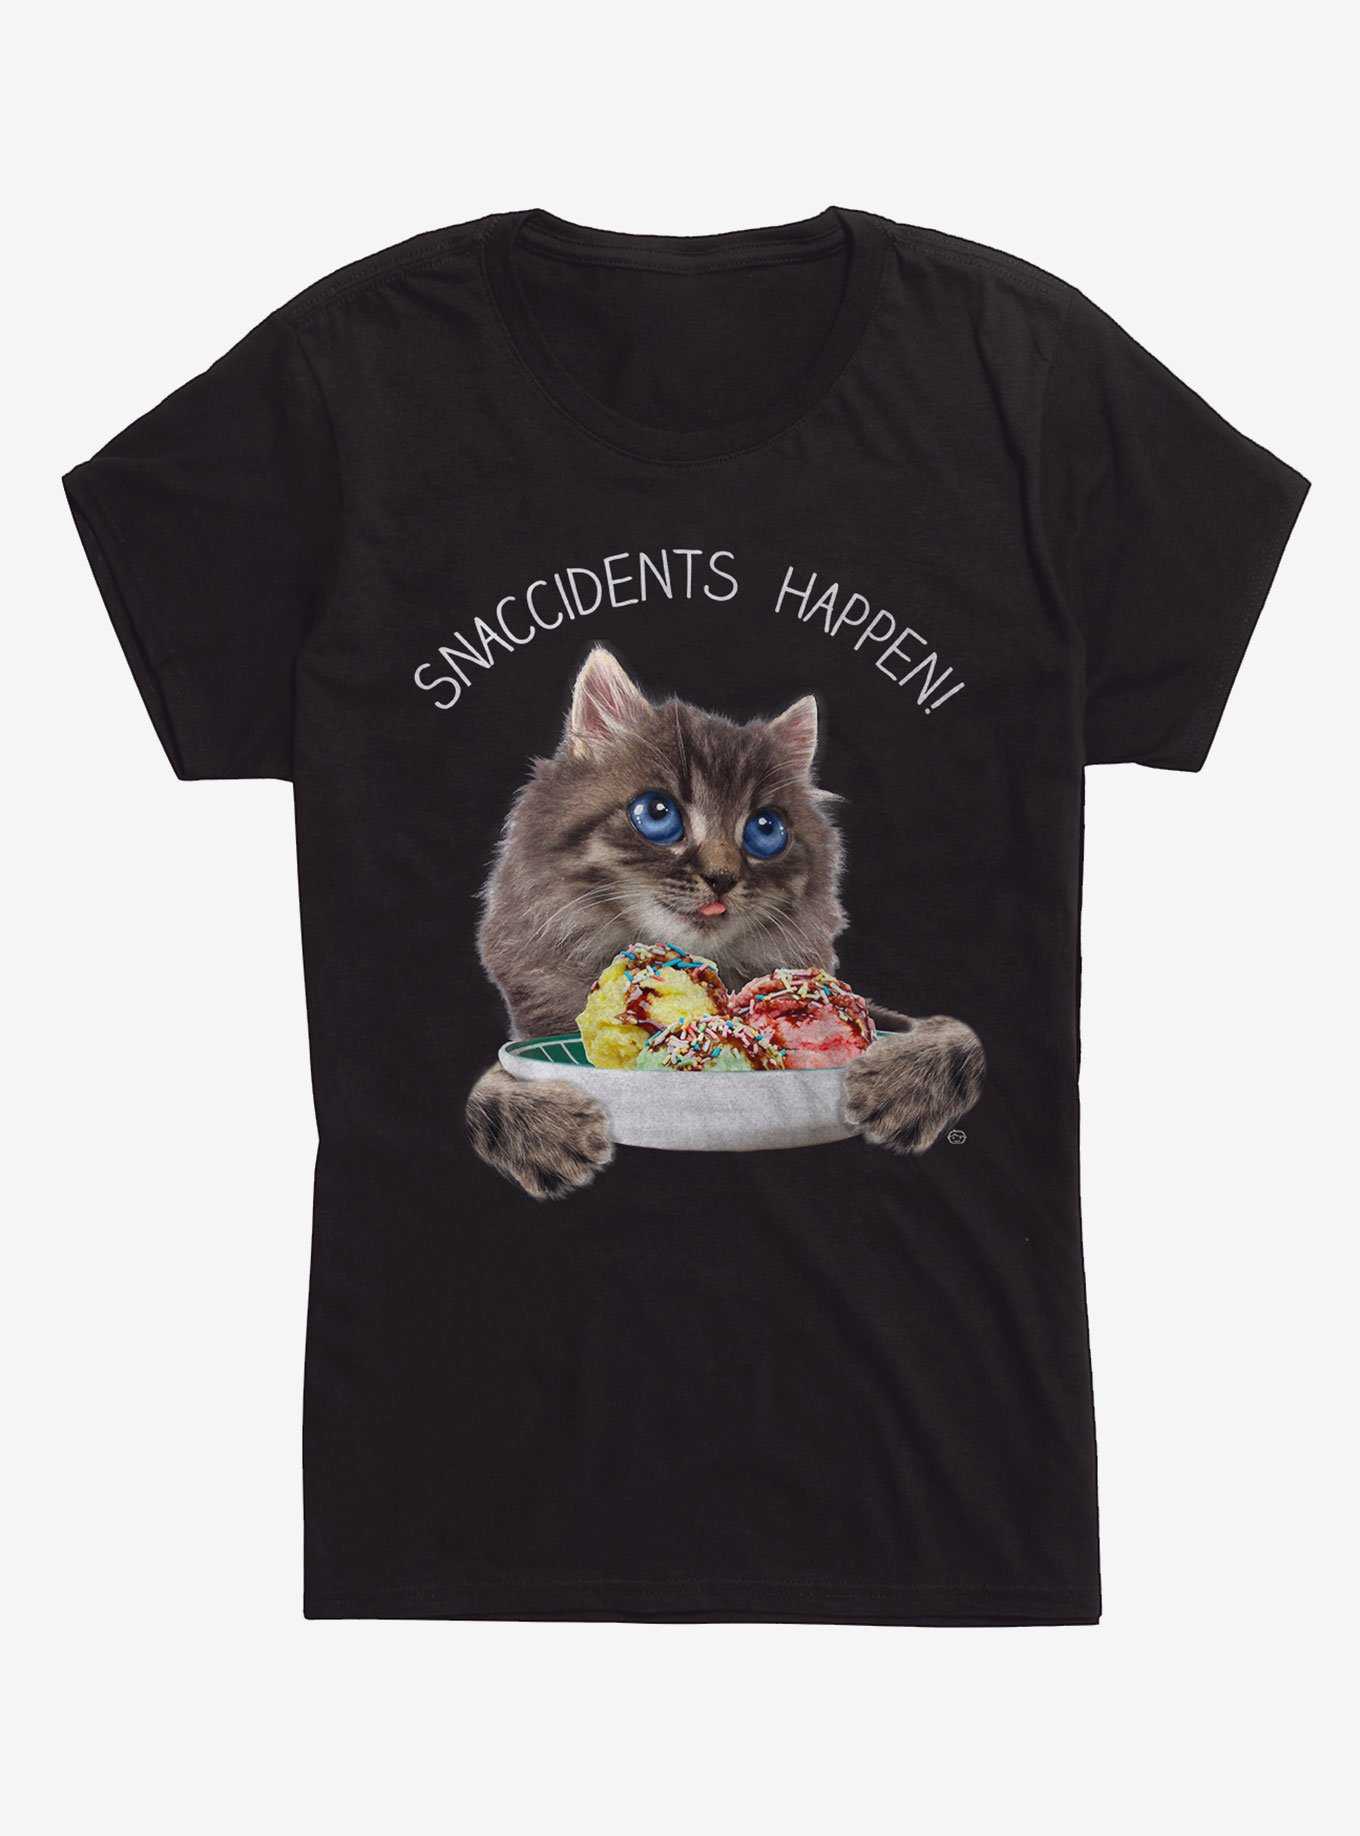 Snaccidents Happen Cat Girls T-Shirt, , hi-res